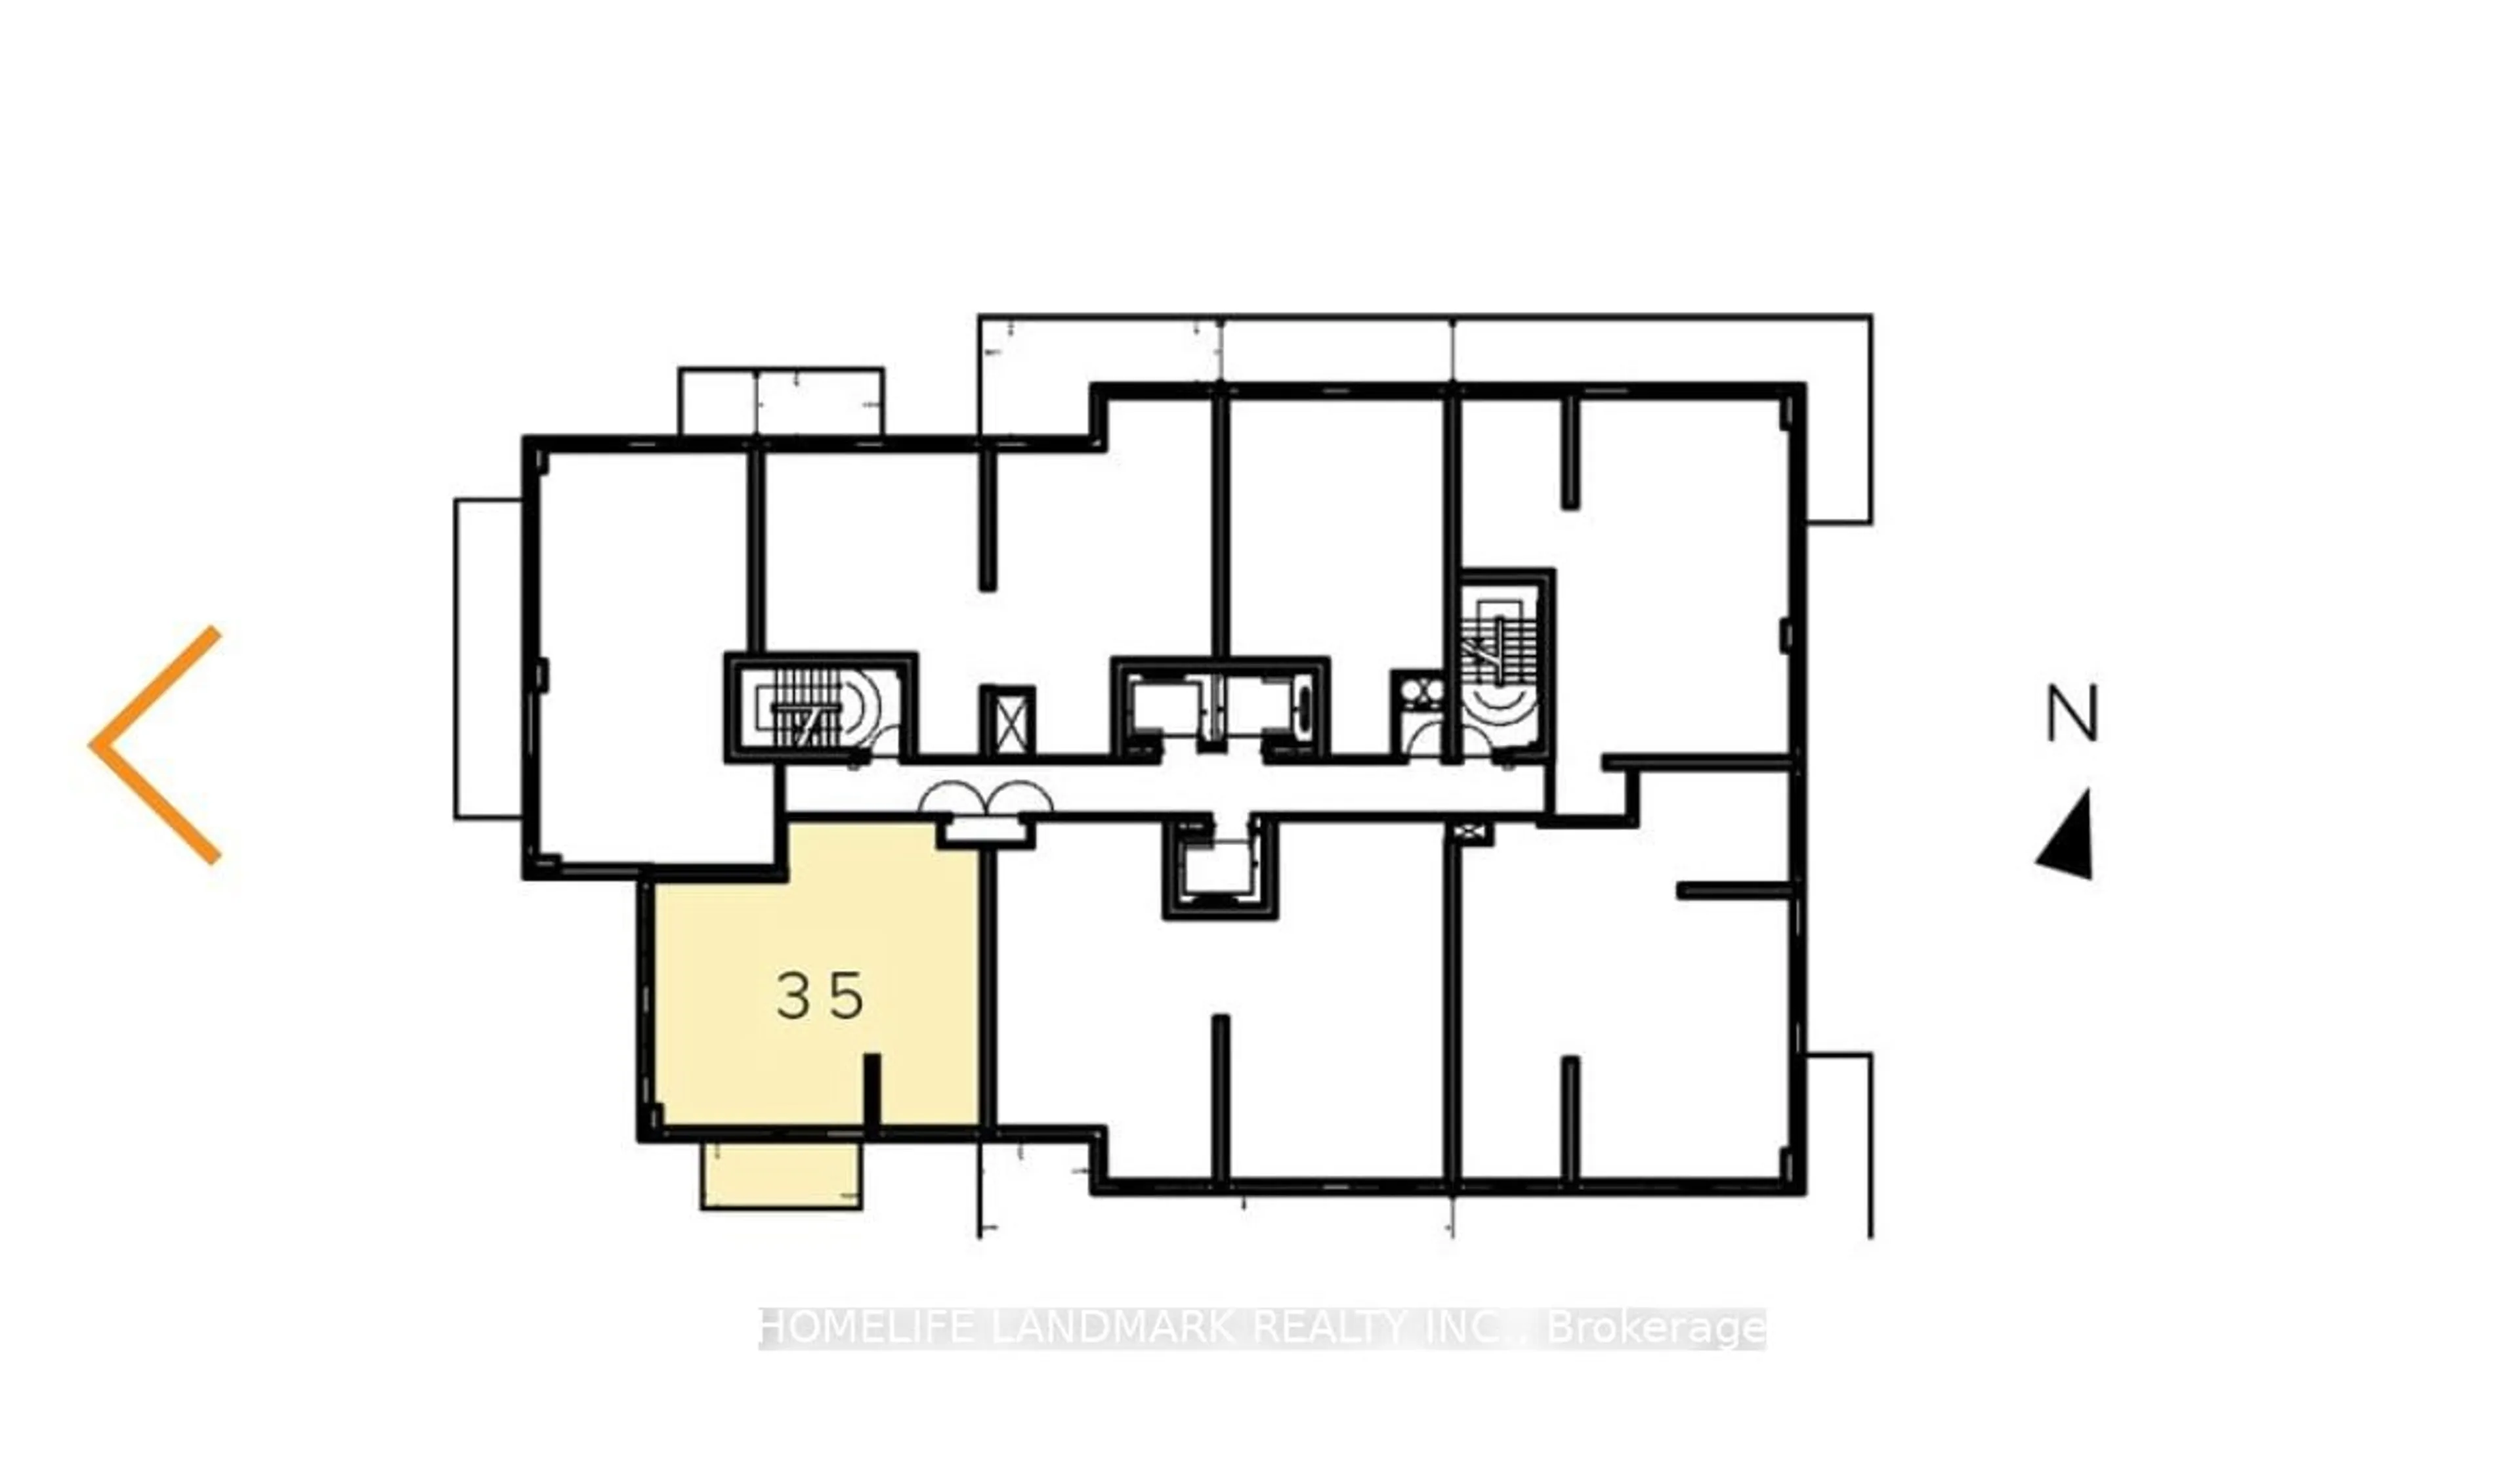 Floor plan for 20 Inn On The Park Dr #2435, Toronto Ontario M3C 0P8